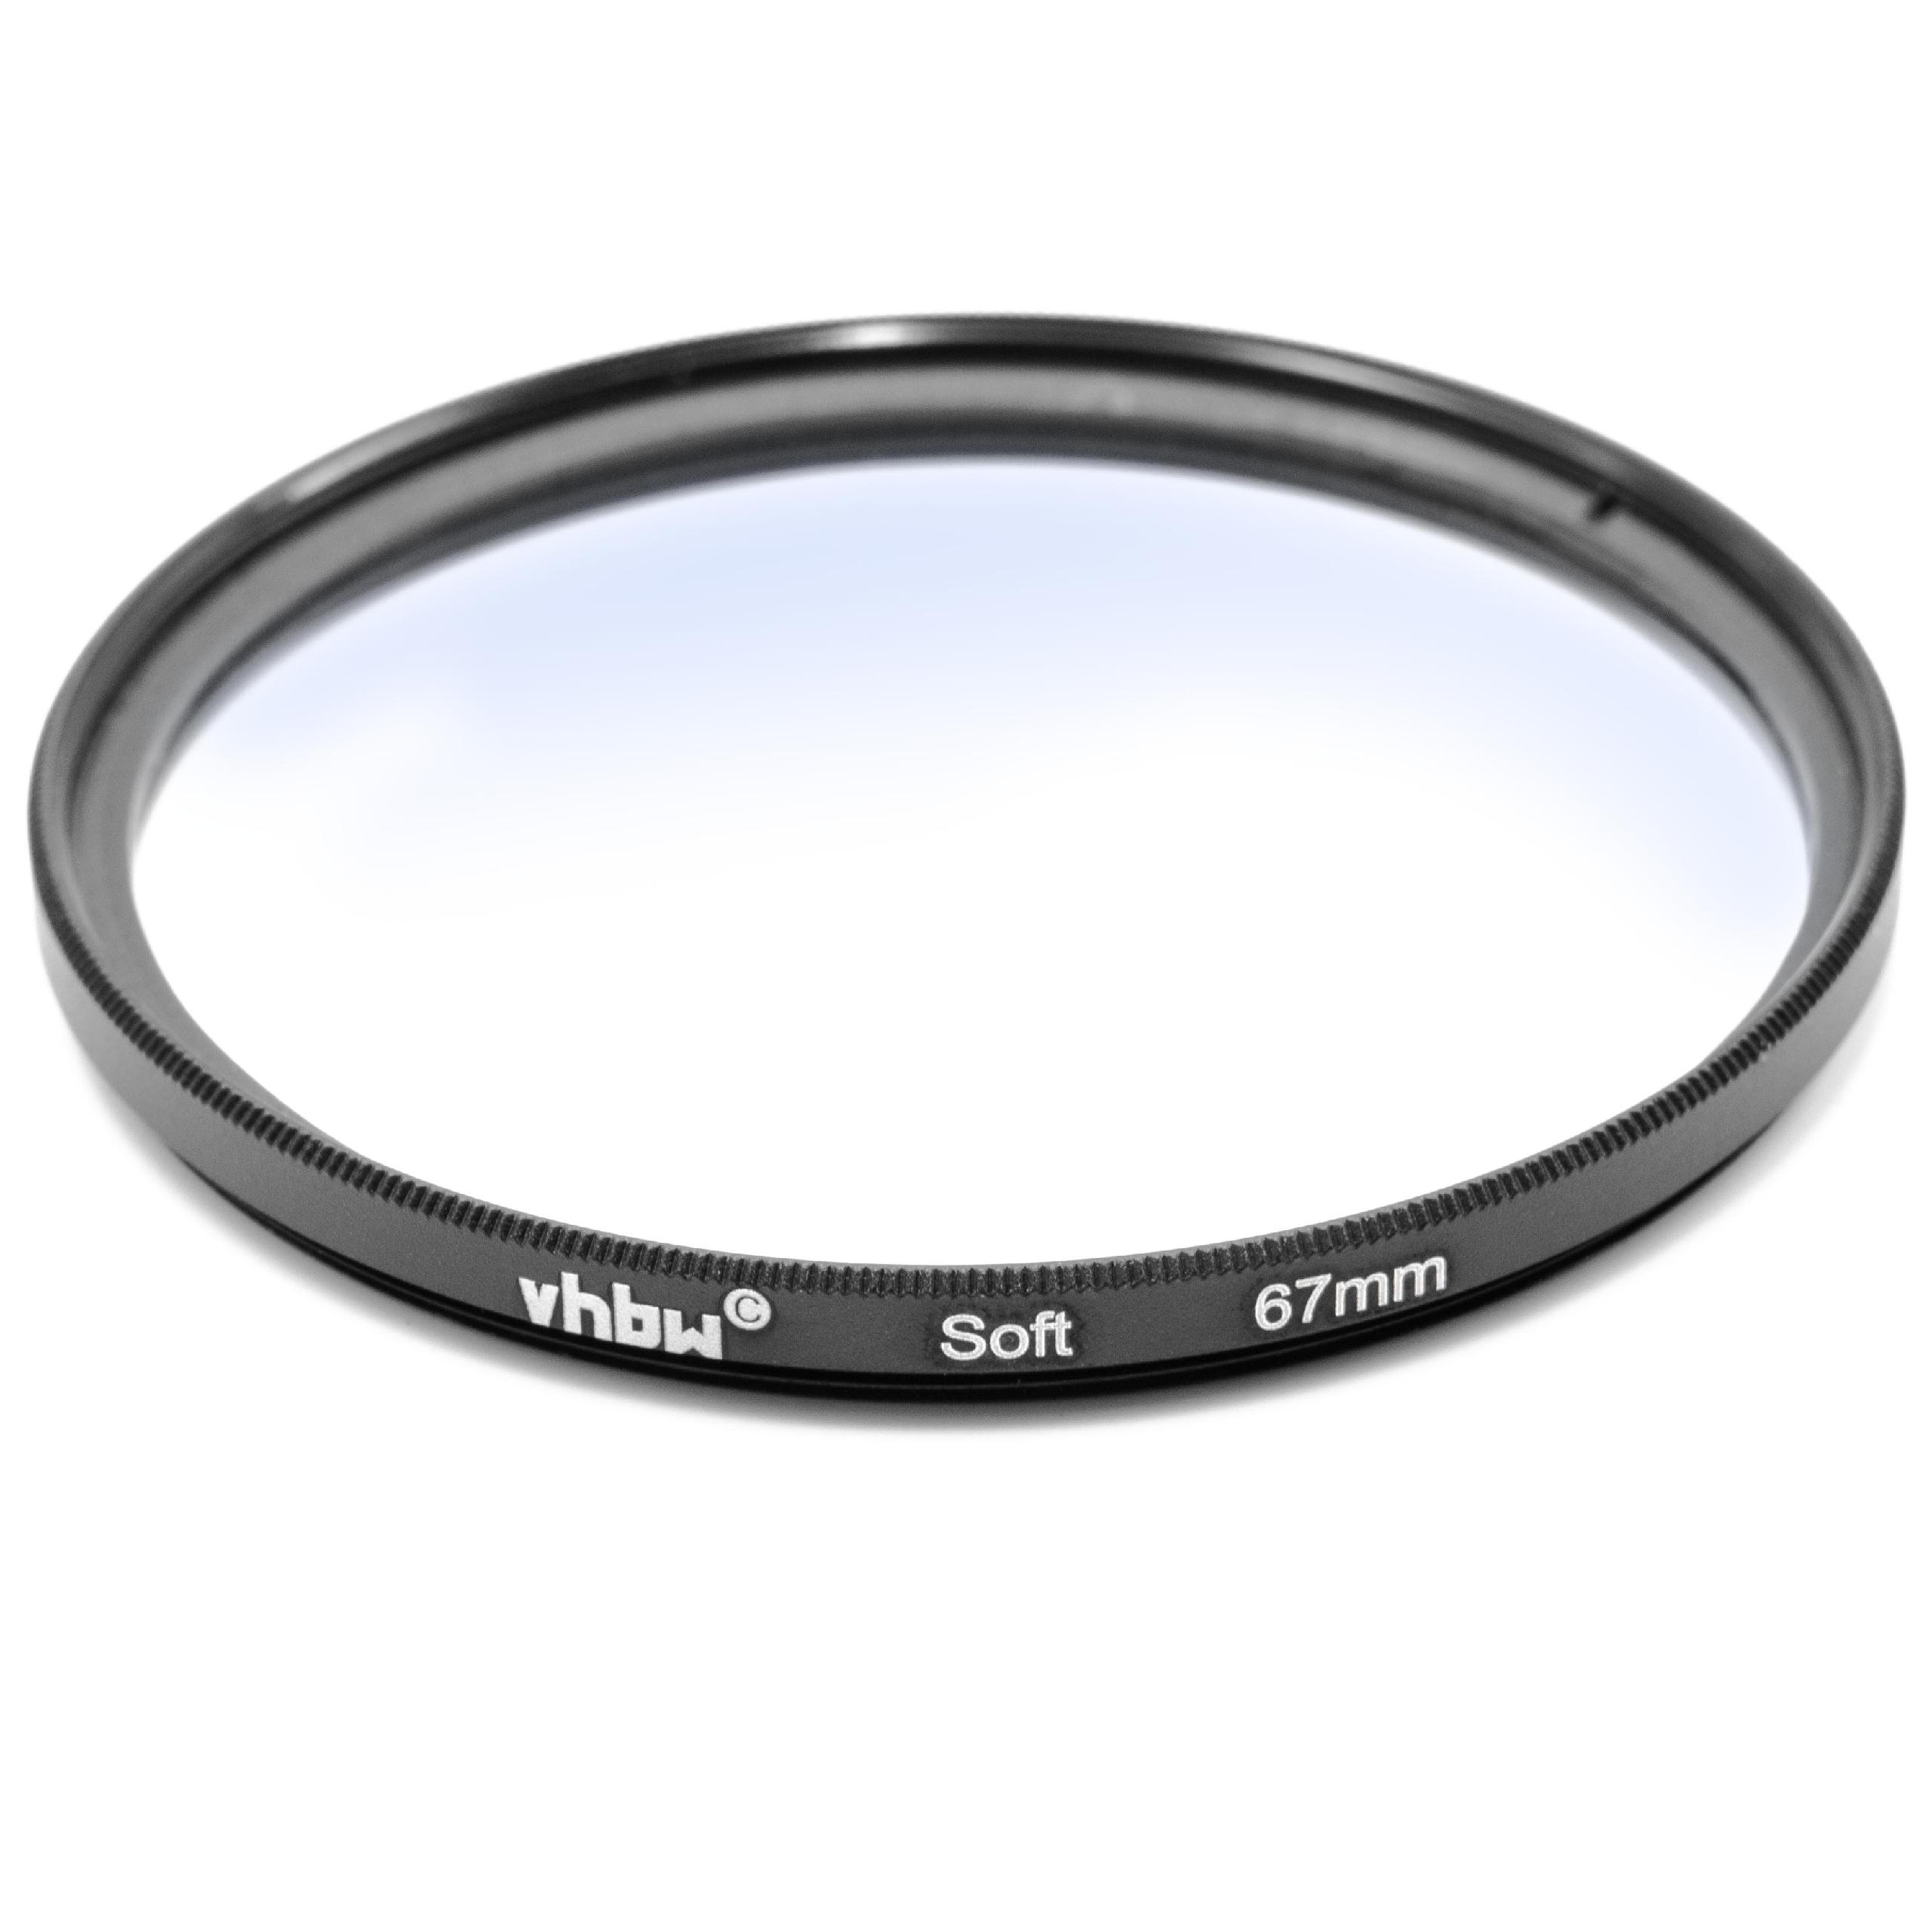 Filtre soft pour objectif d'appareil photo de diamètre 67 mm - Filtre doux